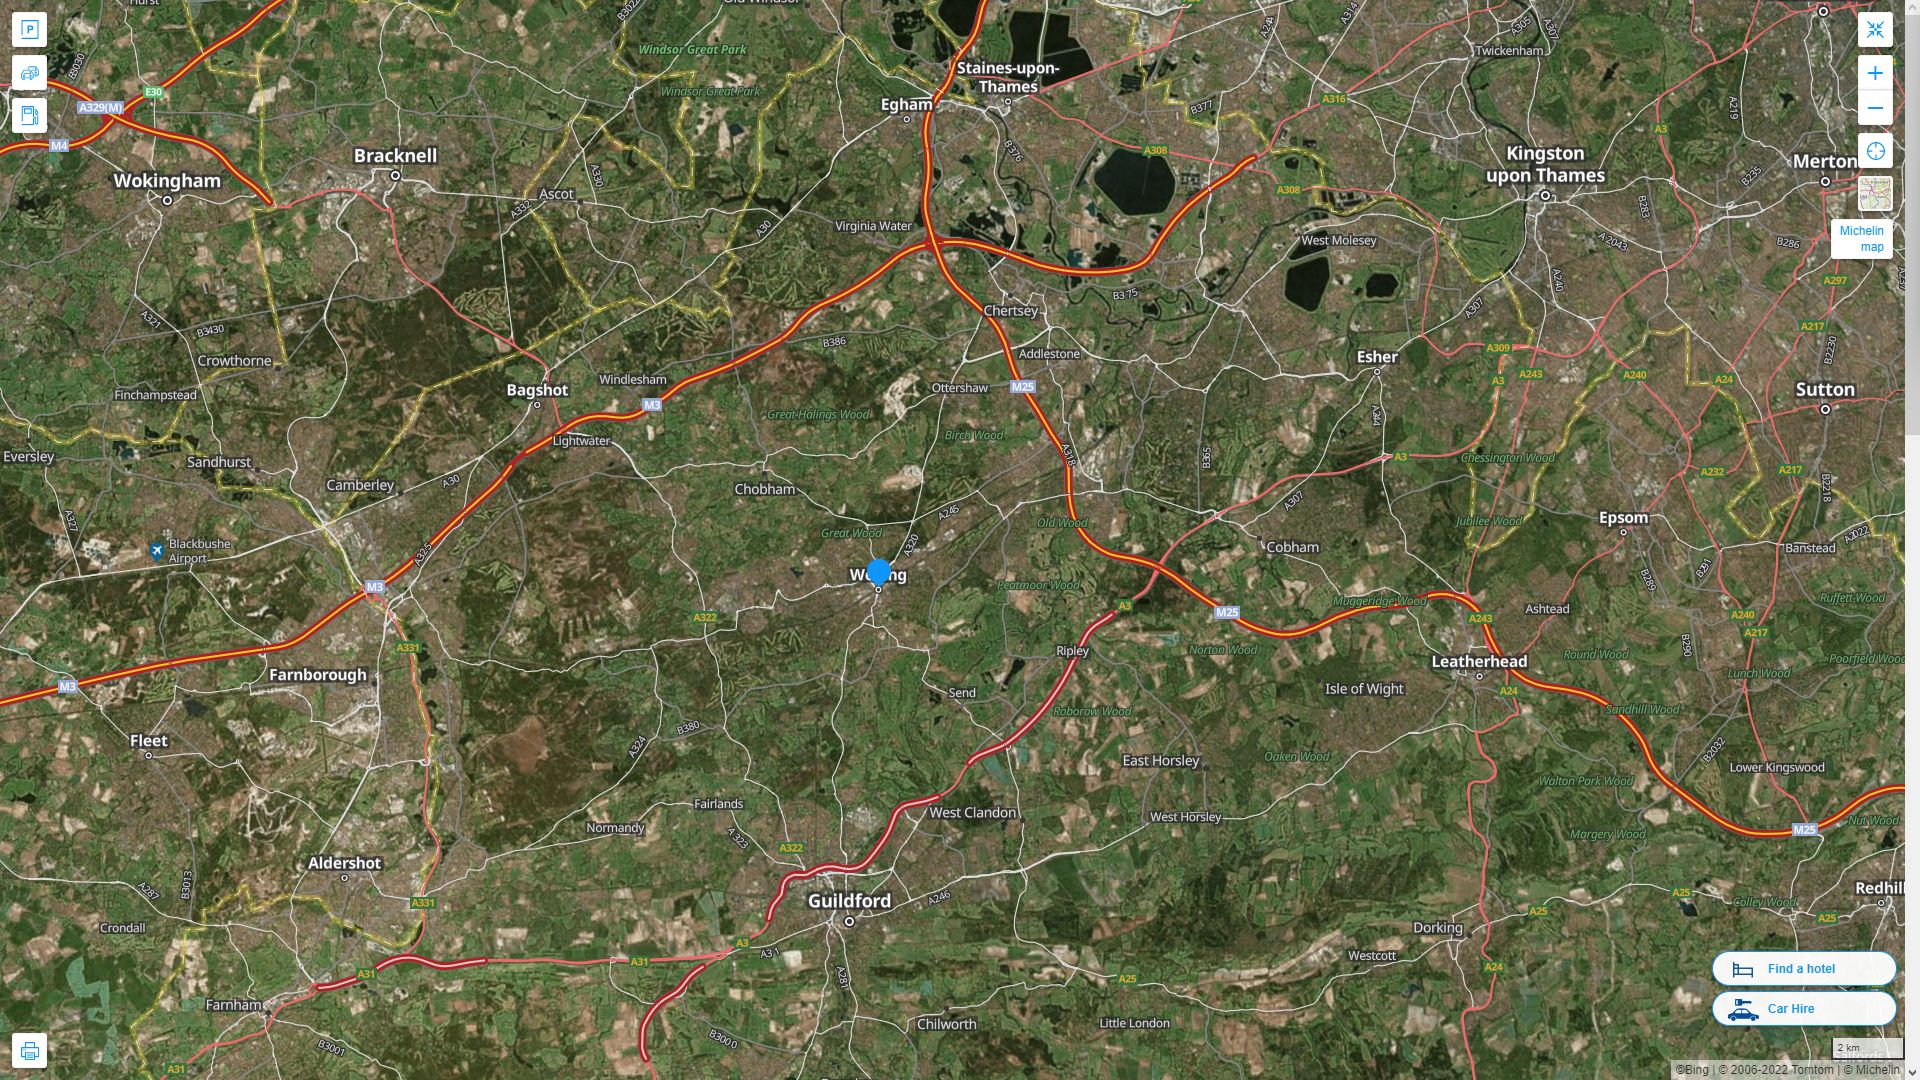 Woking Royaume Uni Autoroute et carte routiere avec vue satellite